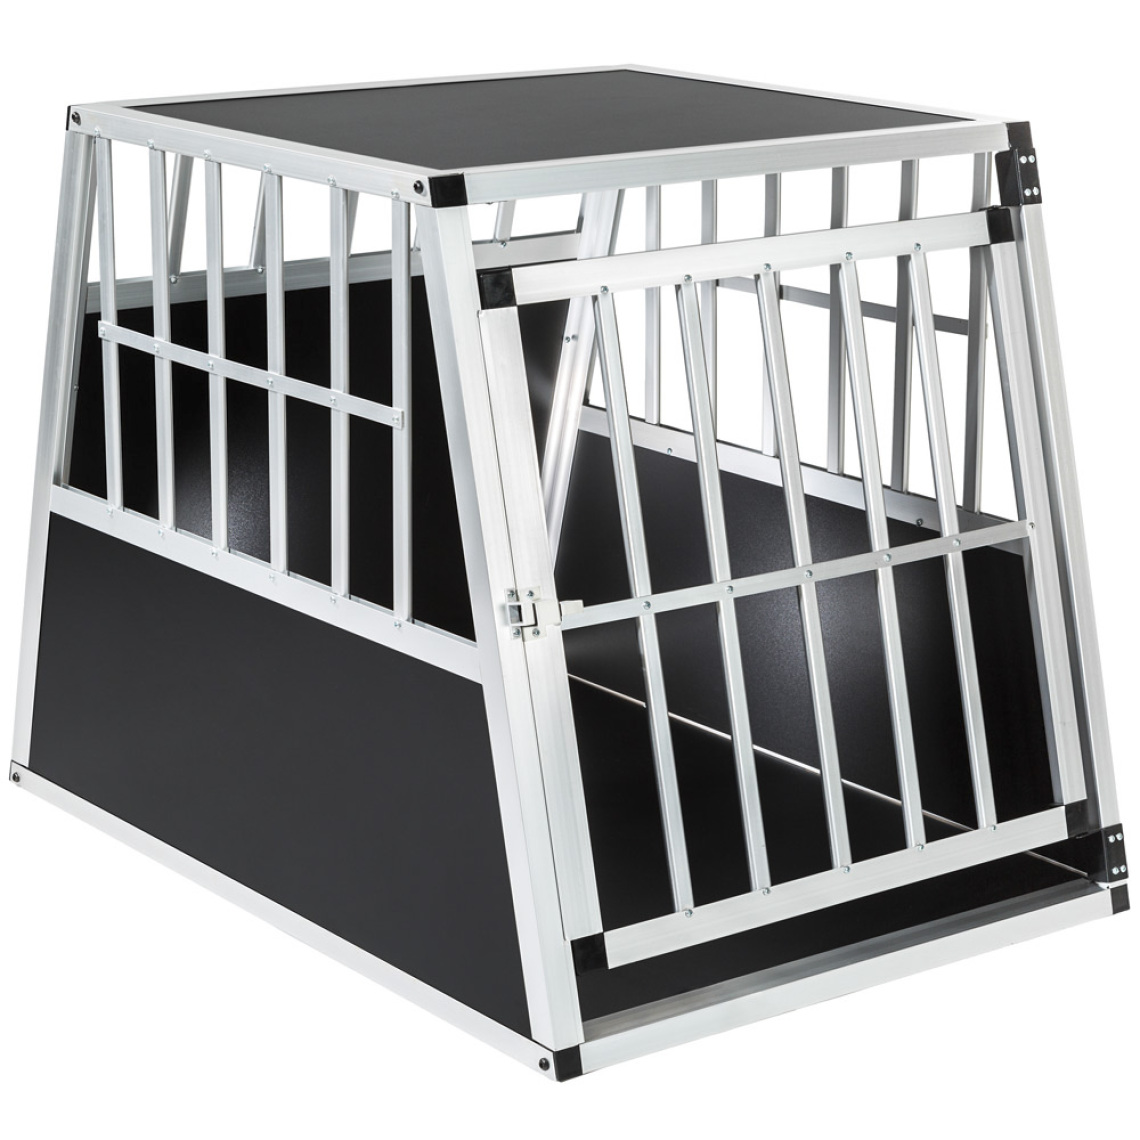 Tectake - Cage de transport pour chien simple dos incliné - Equipement de transport pour chat